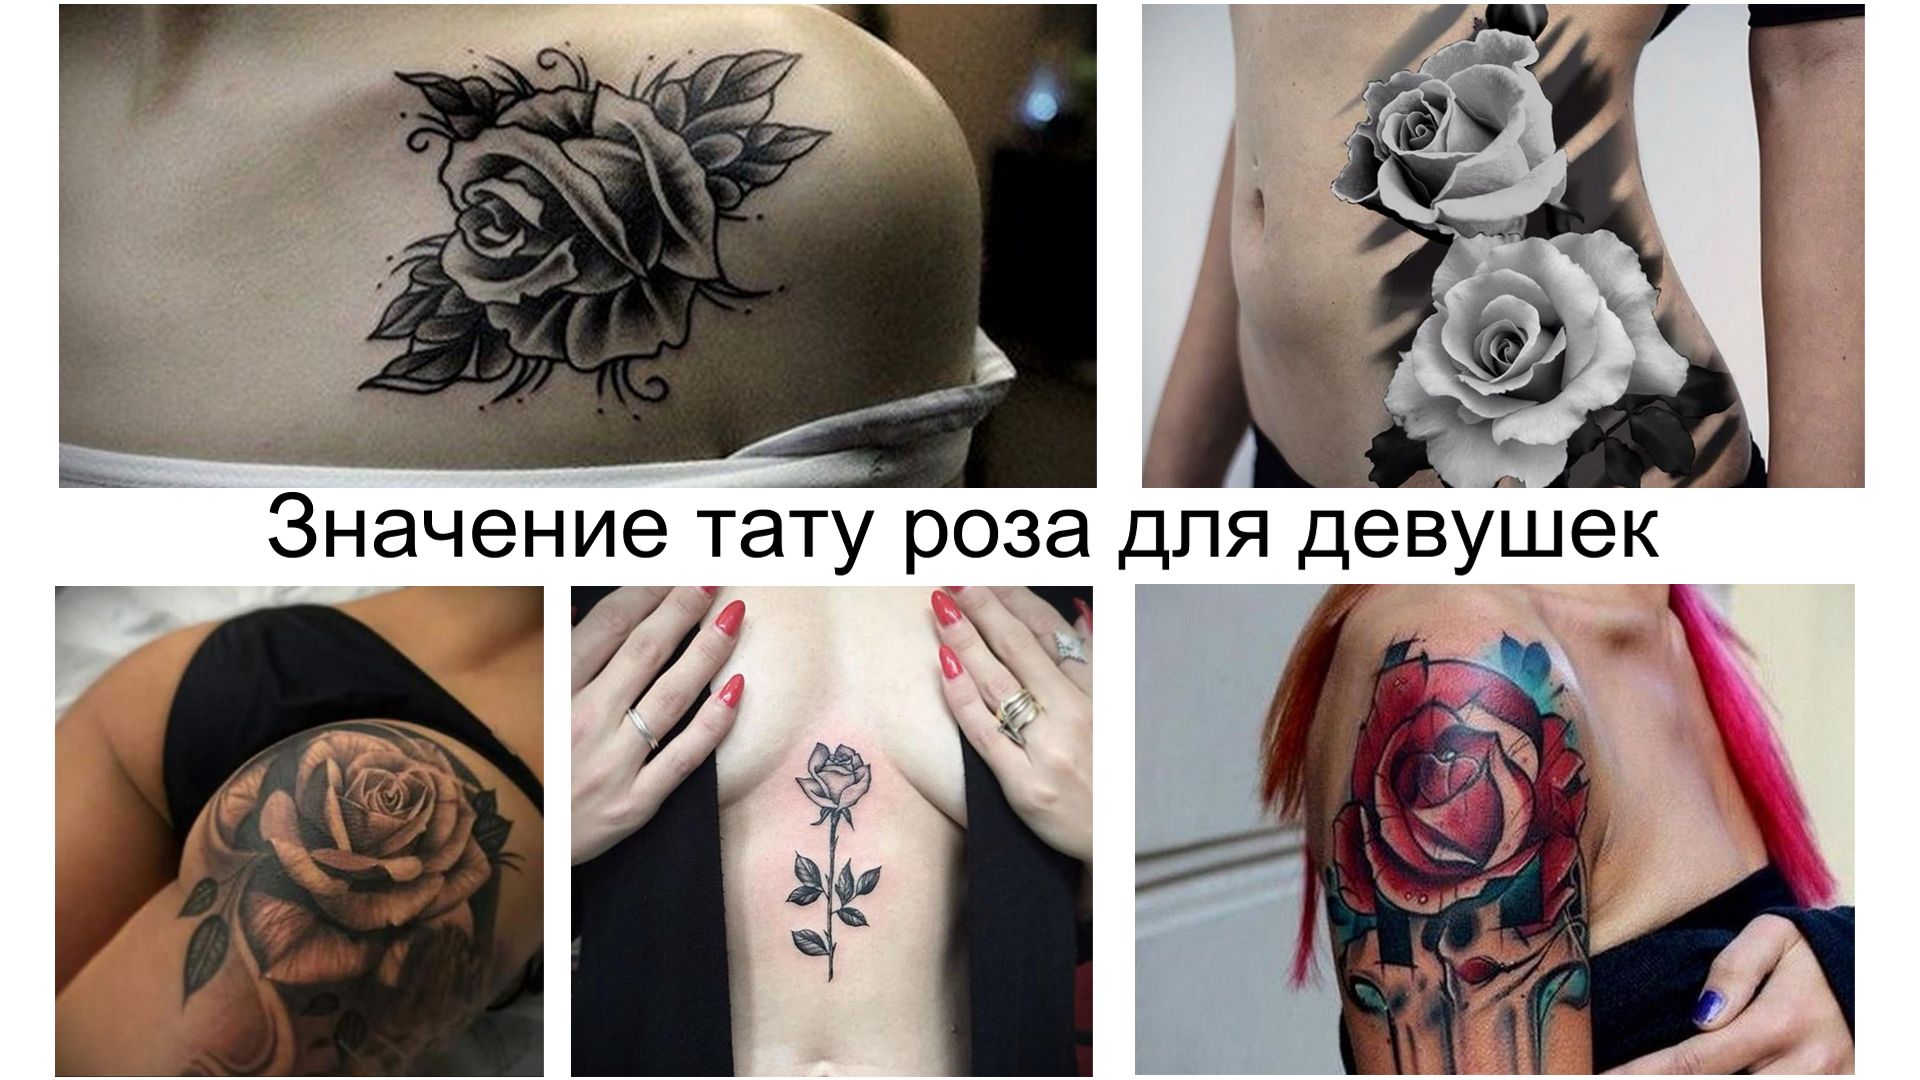 Значение тату роза для девушек - информация про особенности и фото коллекци...